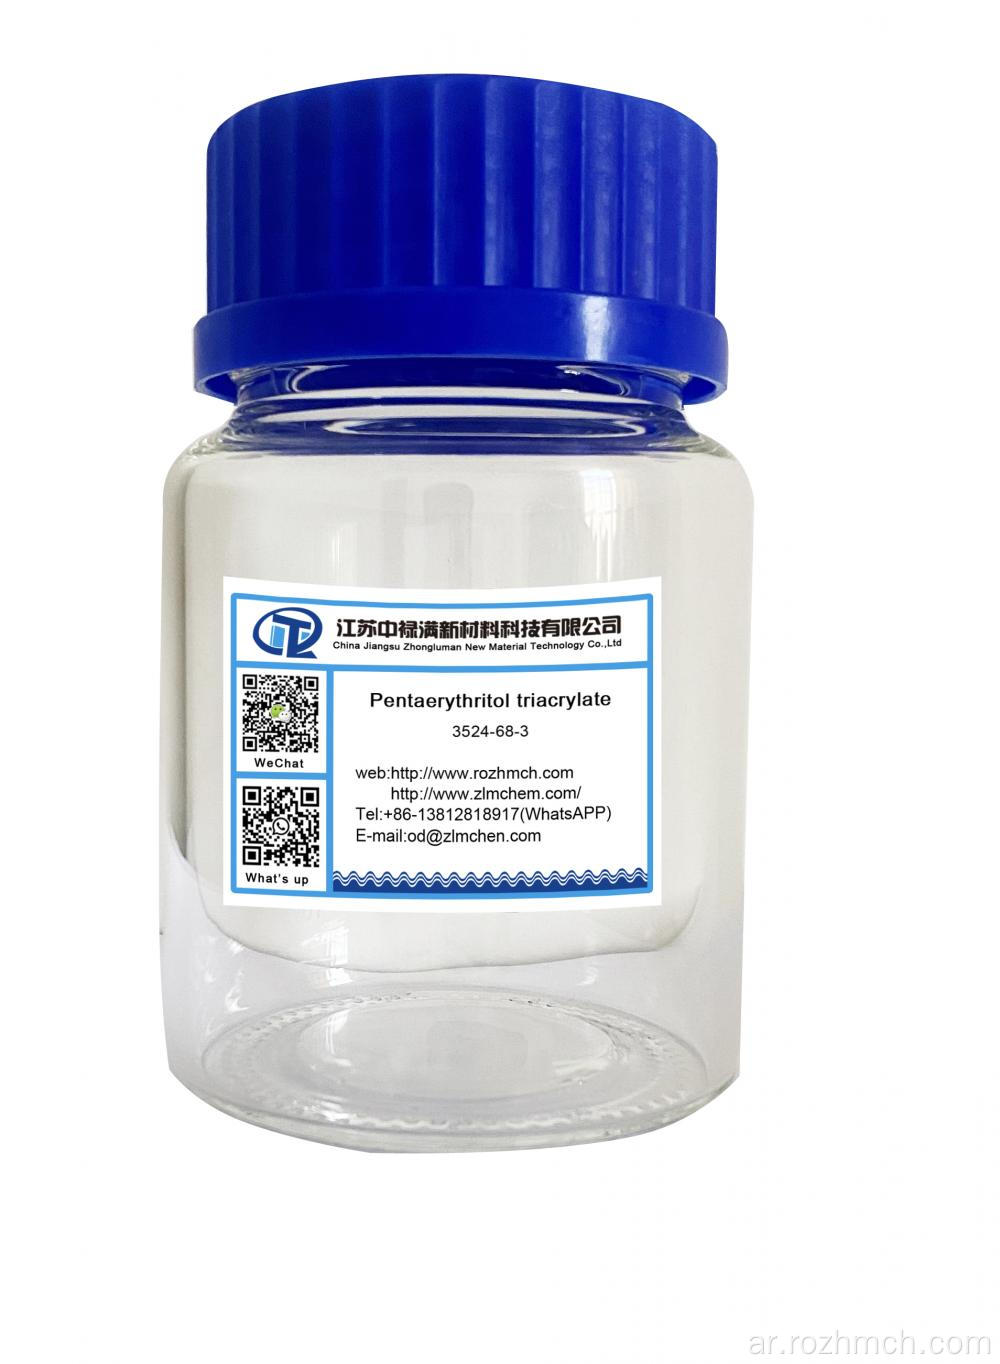 Pentaerythritol Triacrylate CAS 3524-68-3